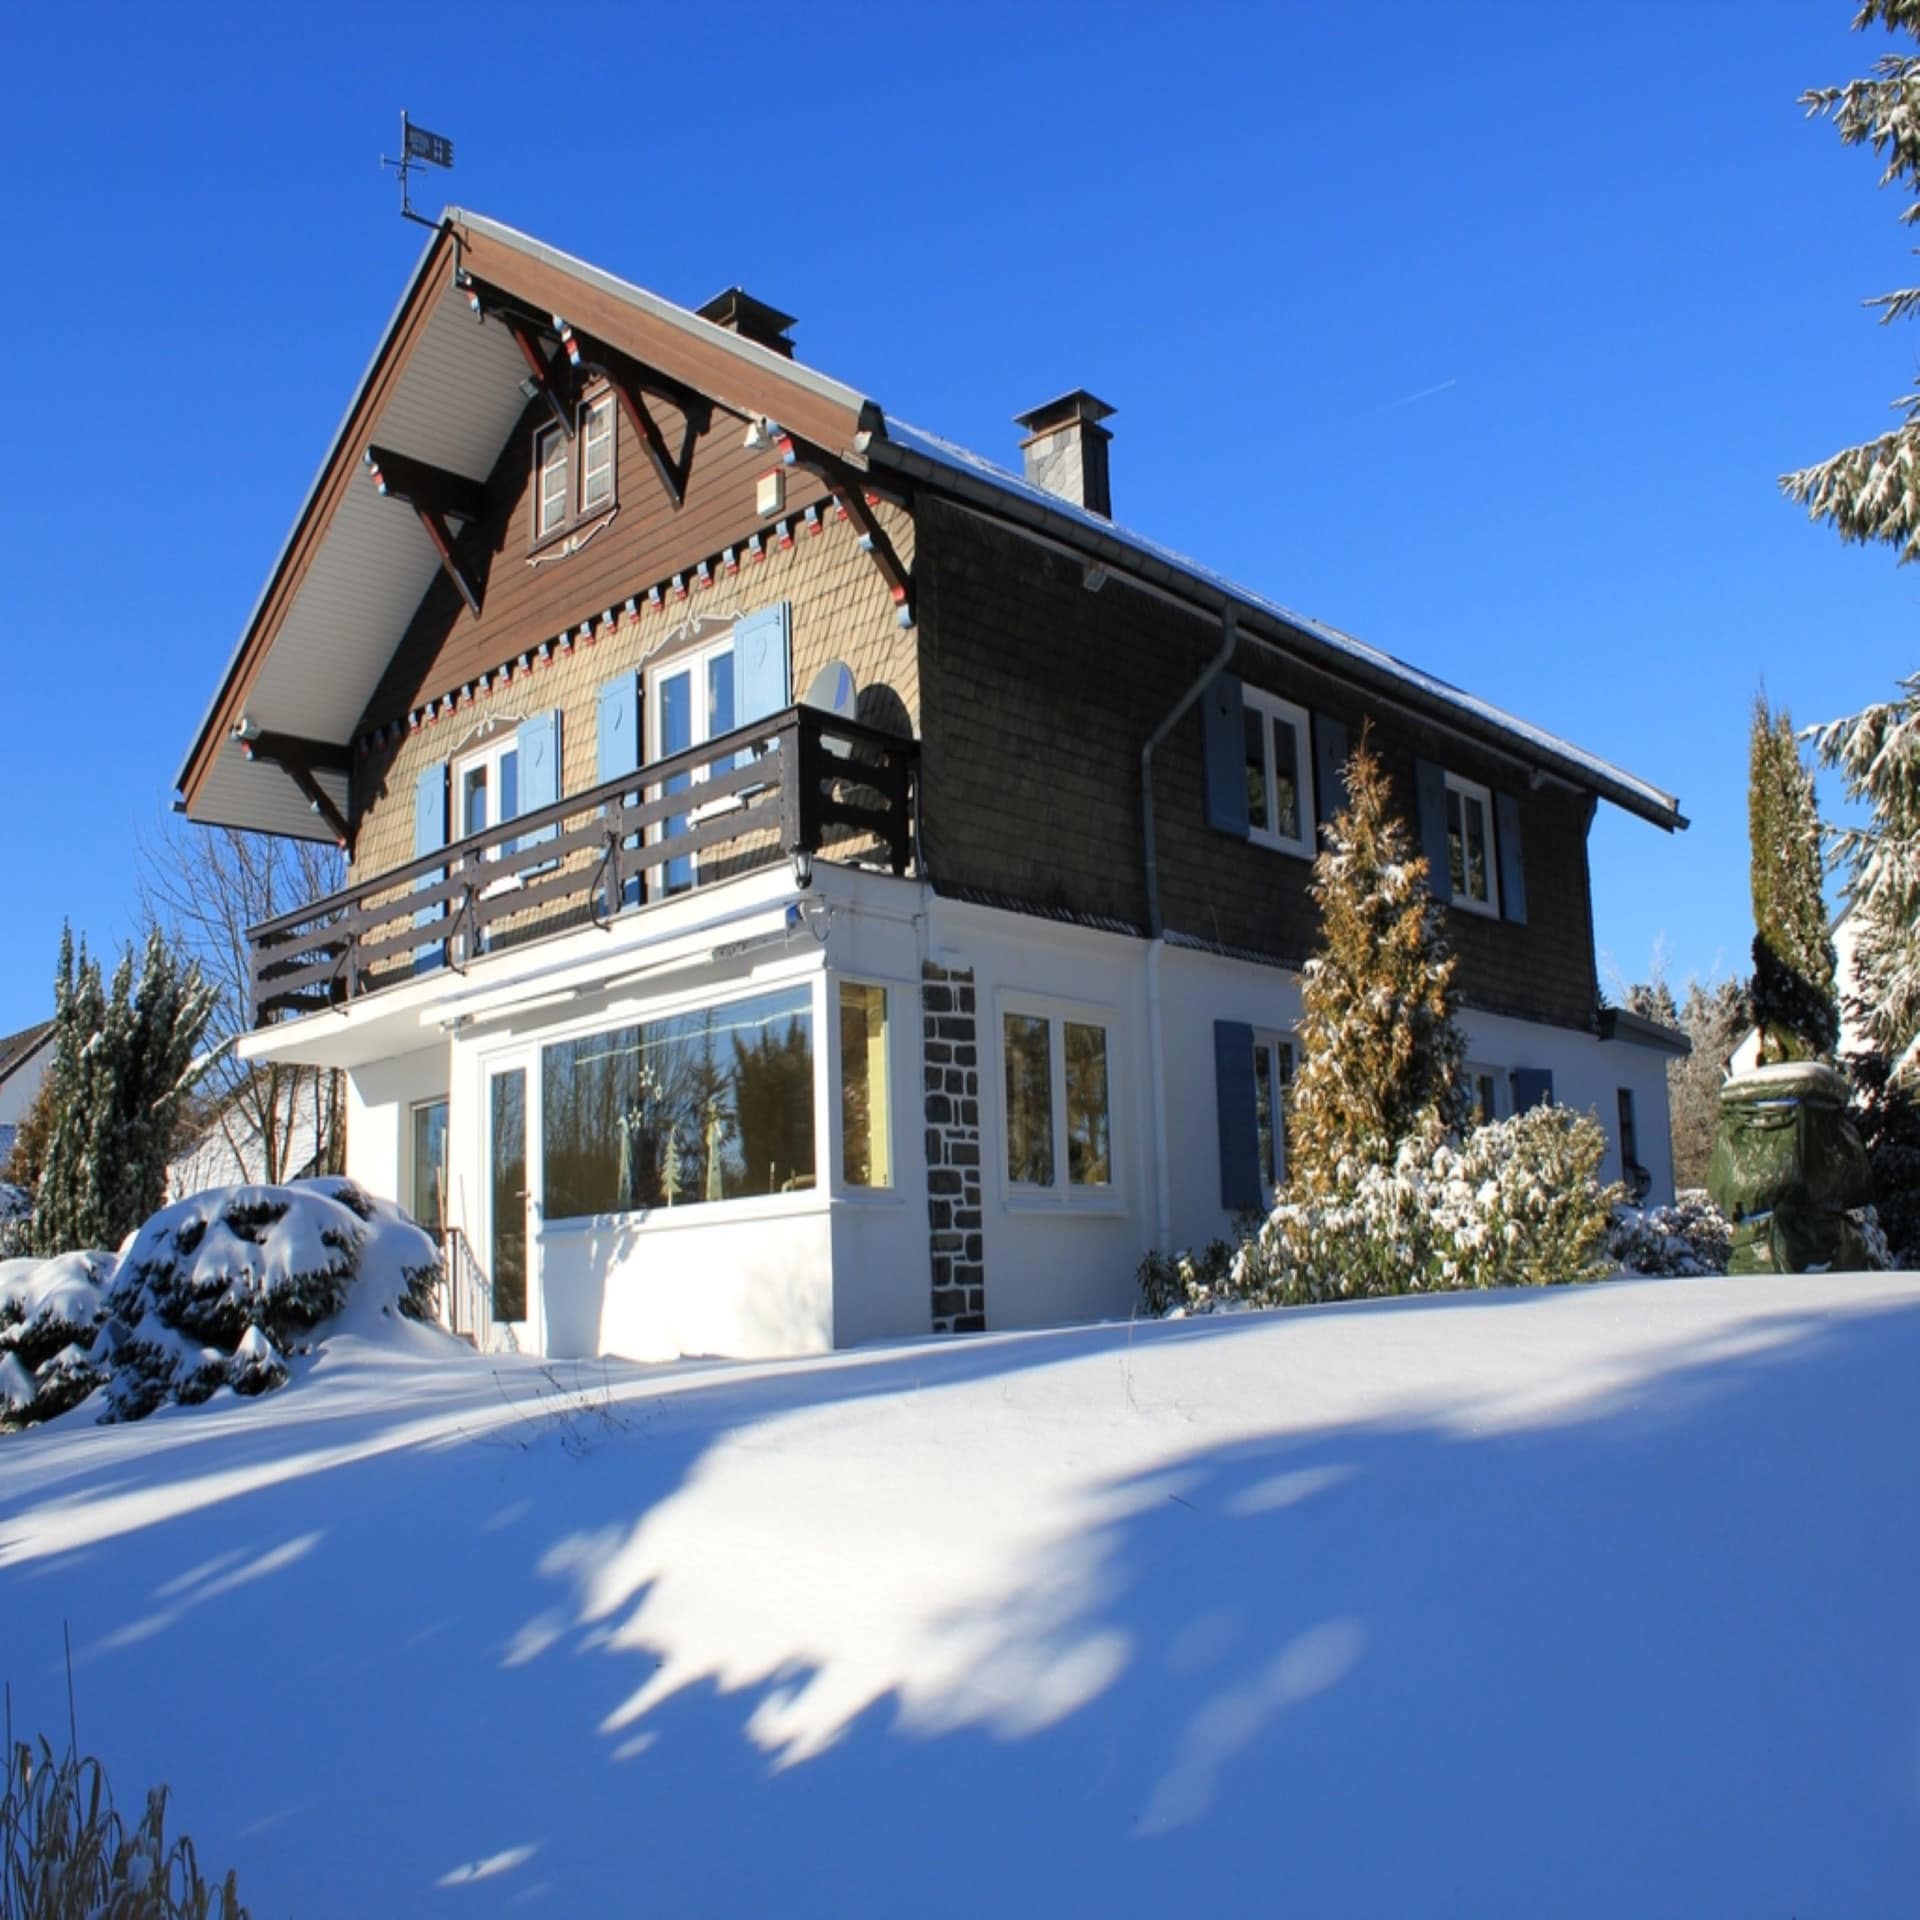 Landestypisches Haus in einem verschneiten Garten bei Sonnenschein.